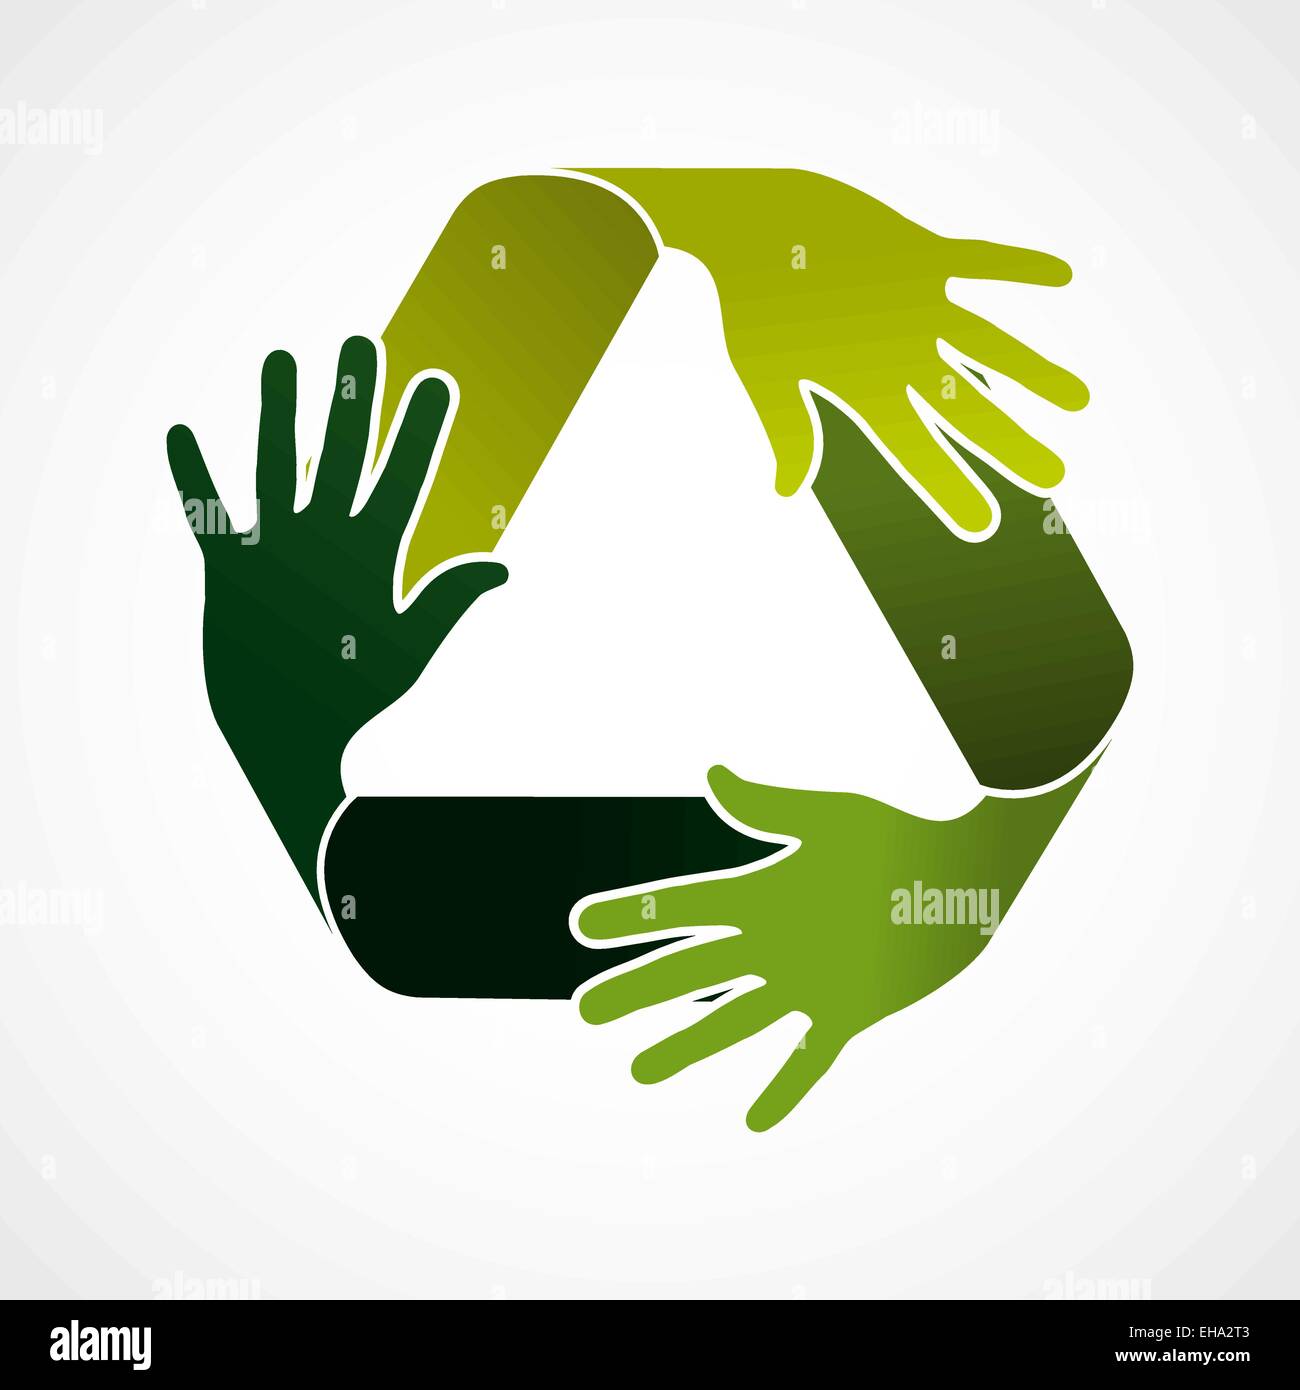 Écologie et recyclage d'équipe concept illustration. Le vert réutilisent le fait avec les mains vertes. Fichier vectoriel EPS10. Illustration de Vecteur